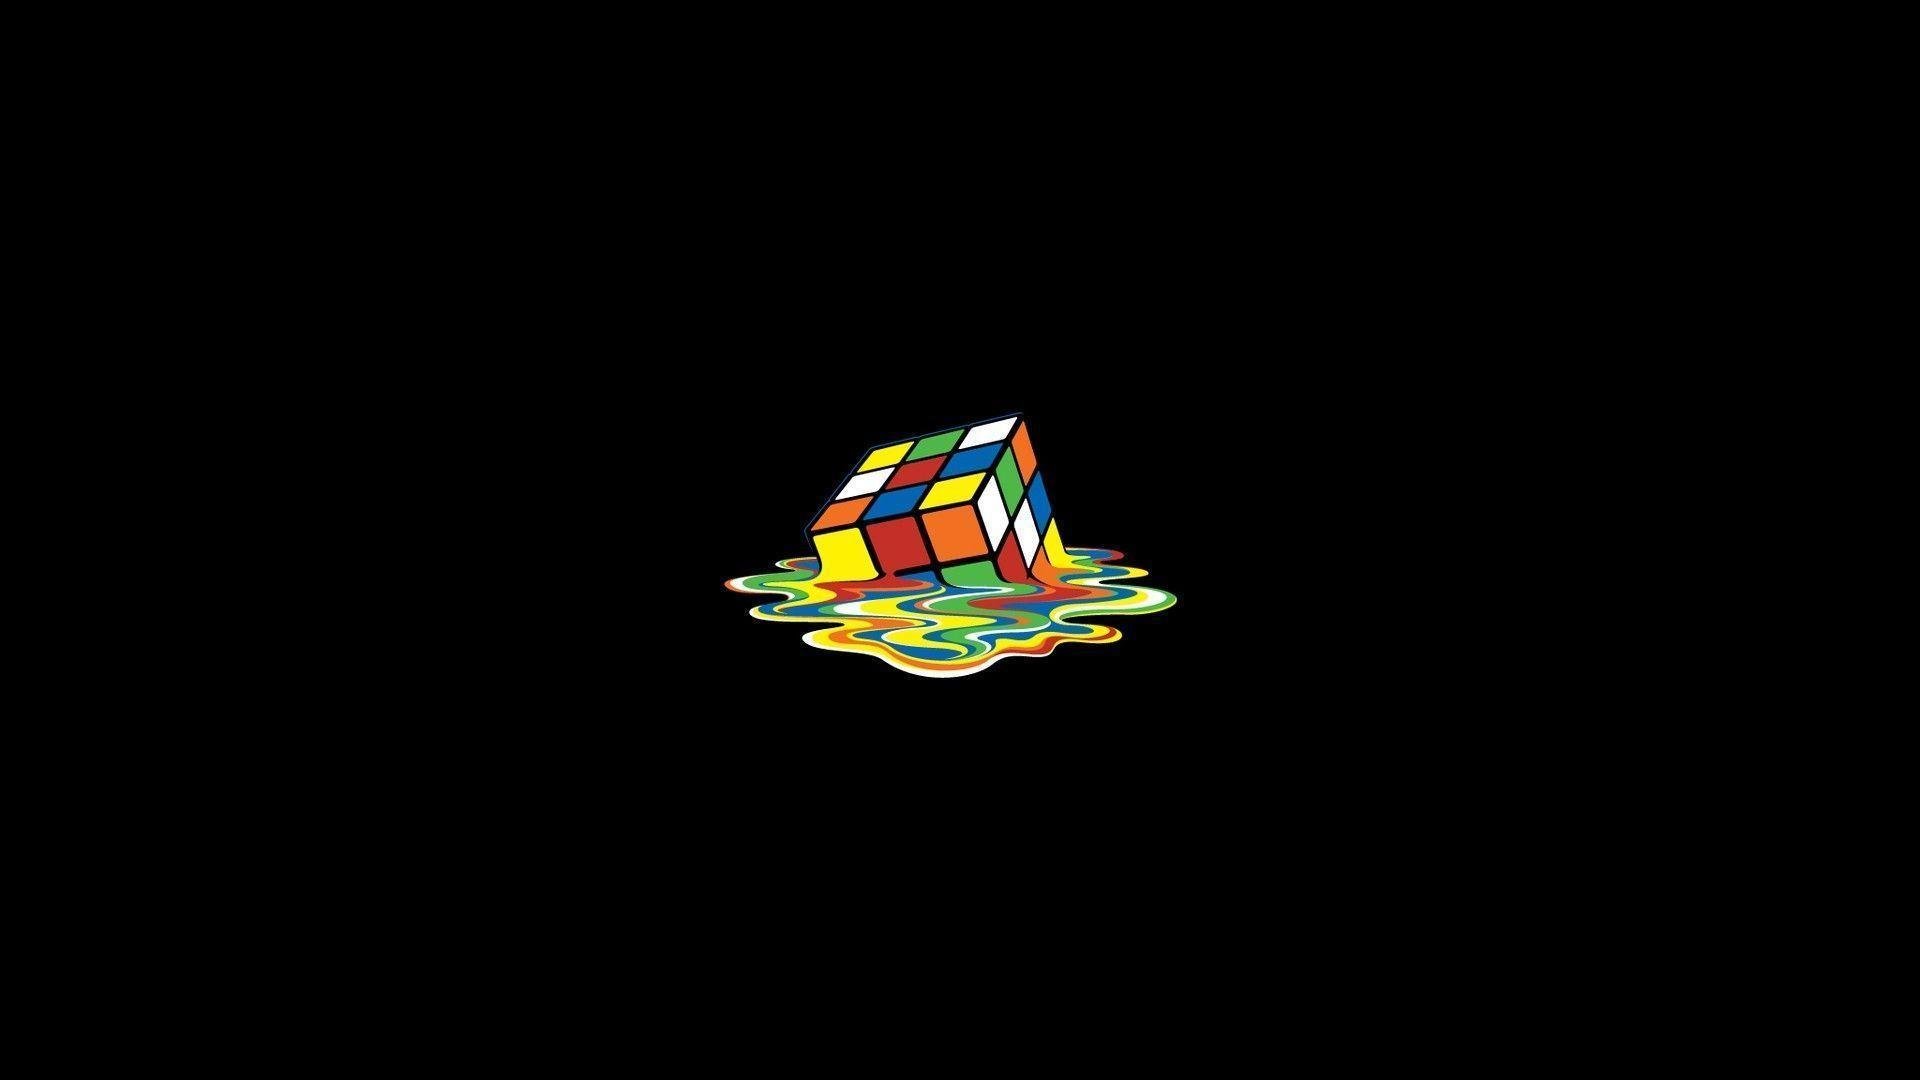 The Image of Minimalistic Melting Rubiks Cube Black Backgrounds